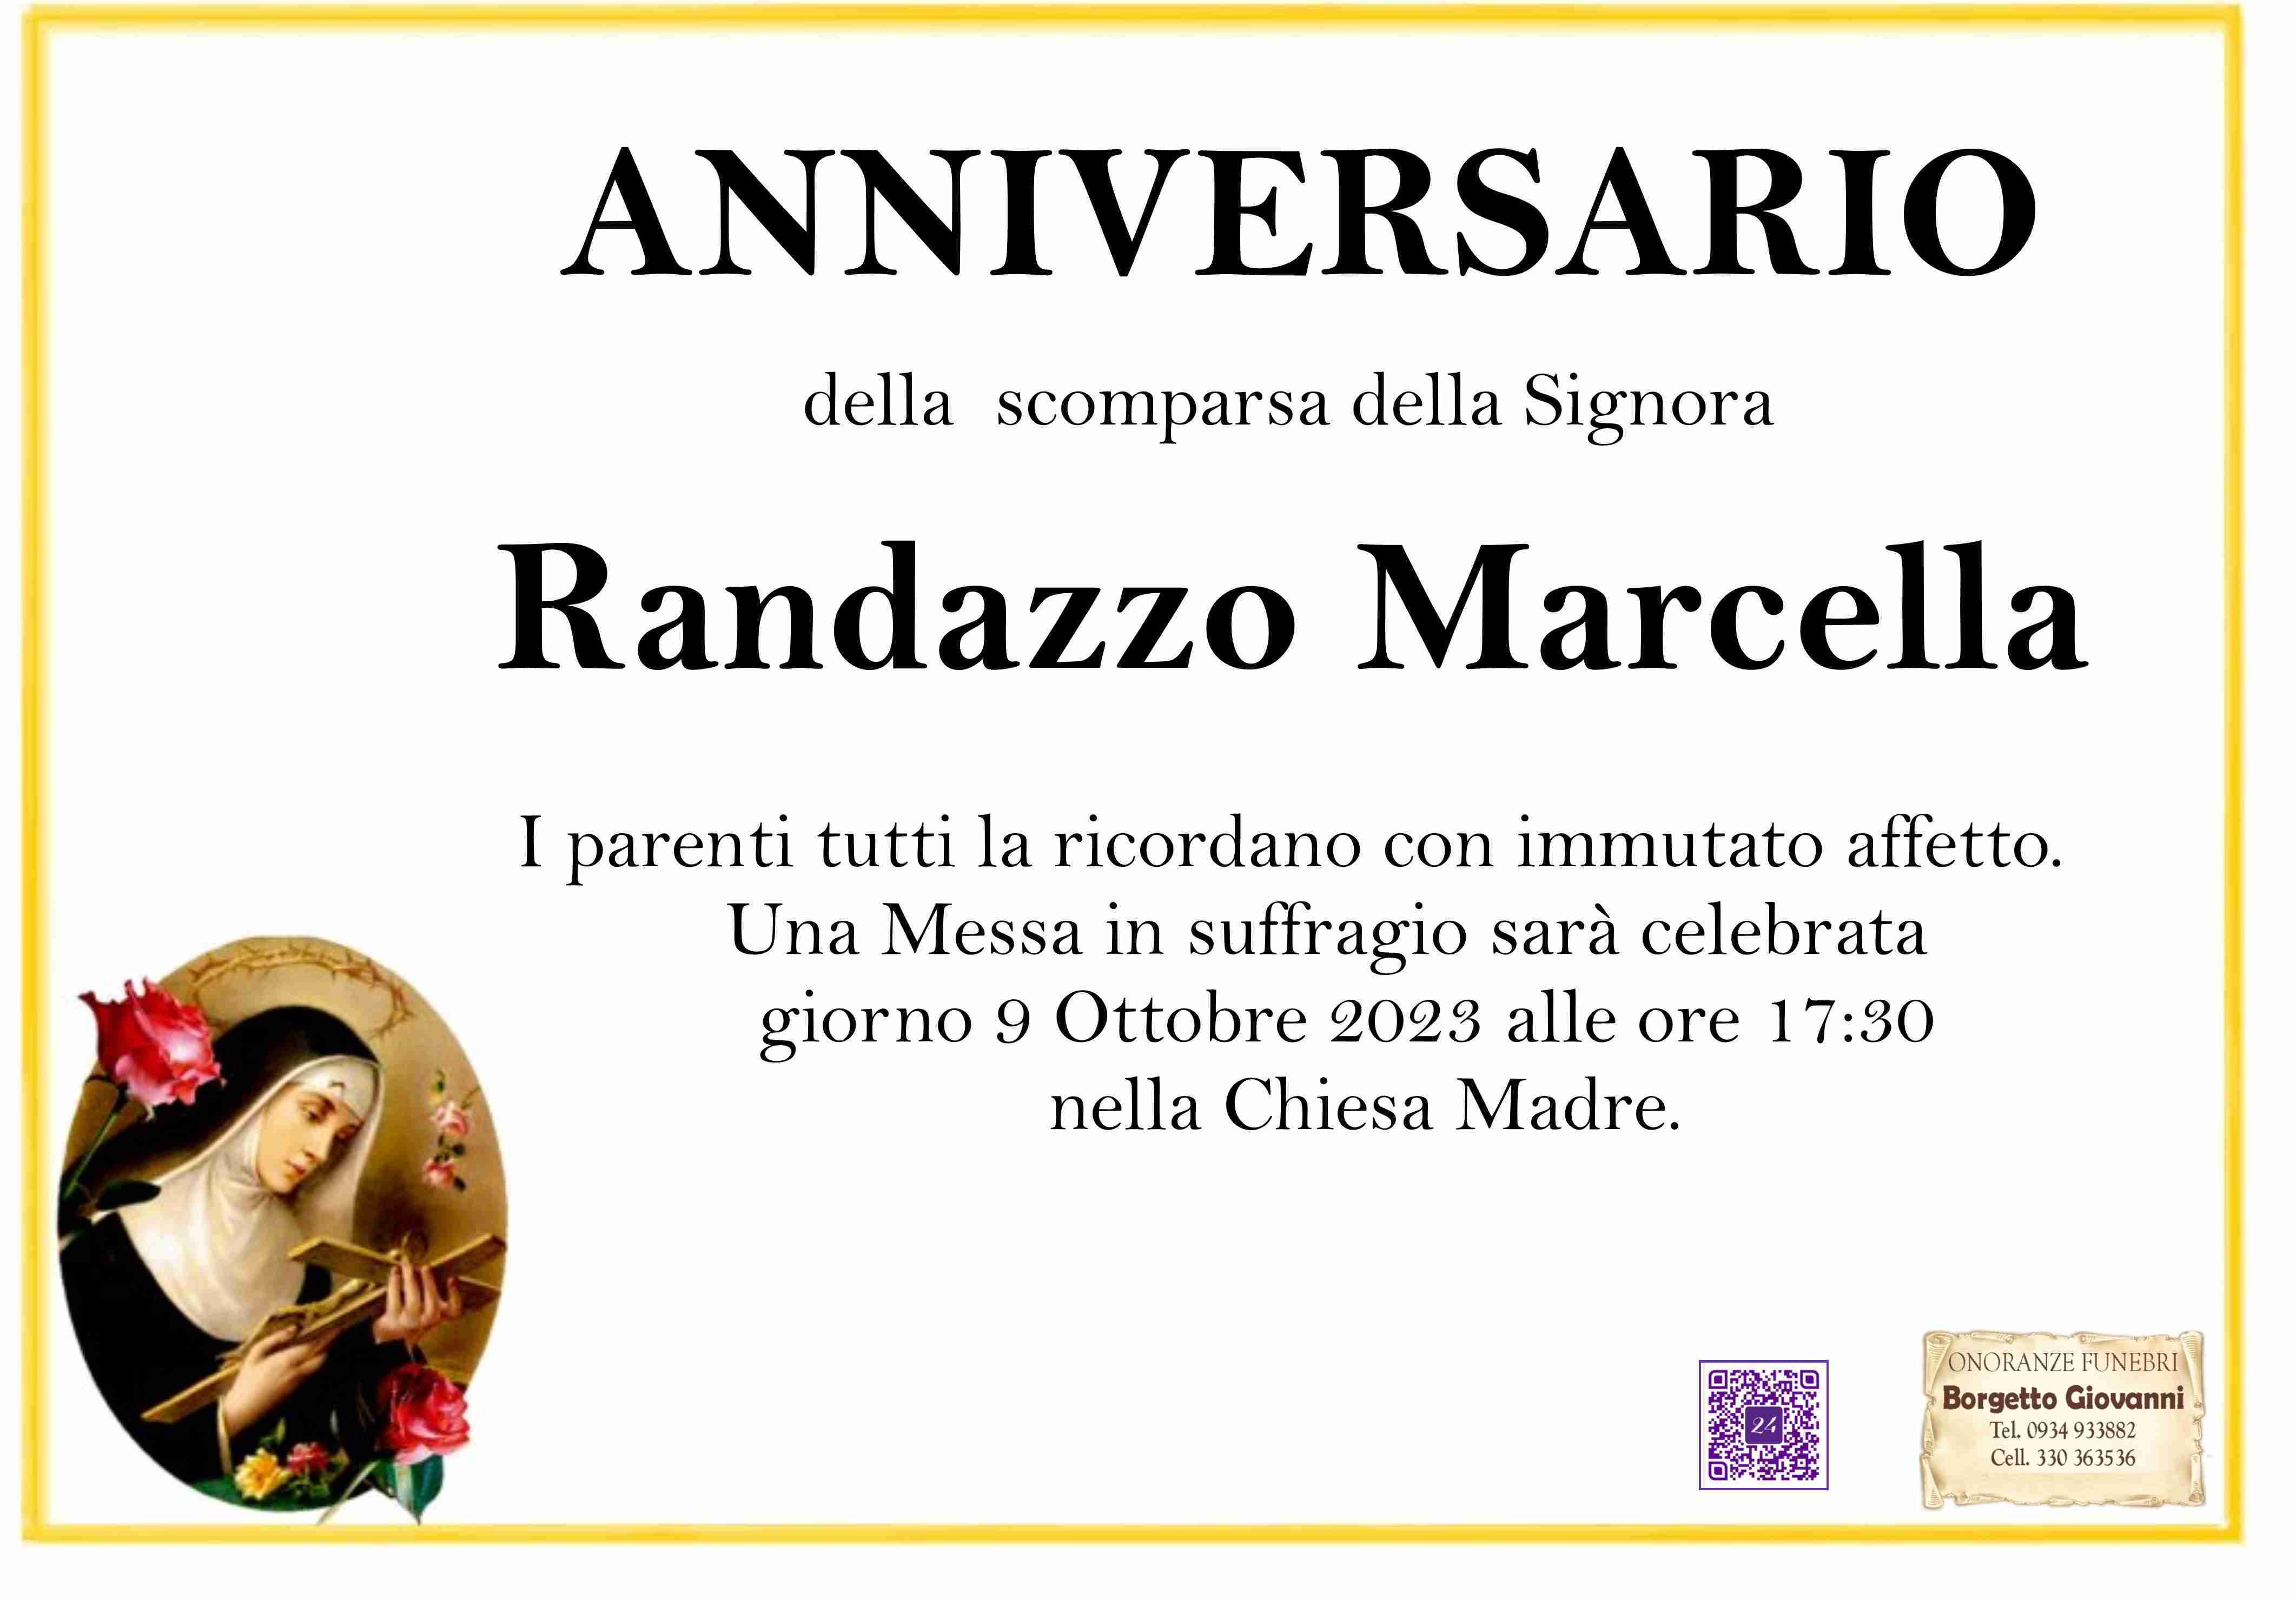 Marcella Randazzo